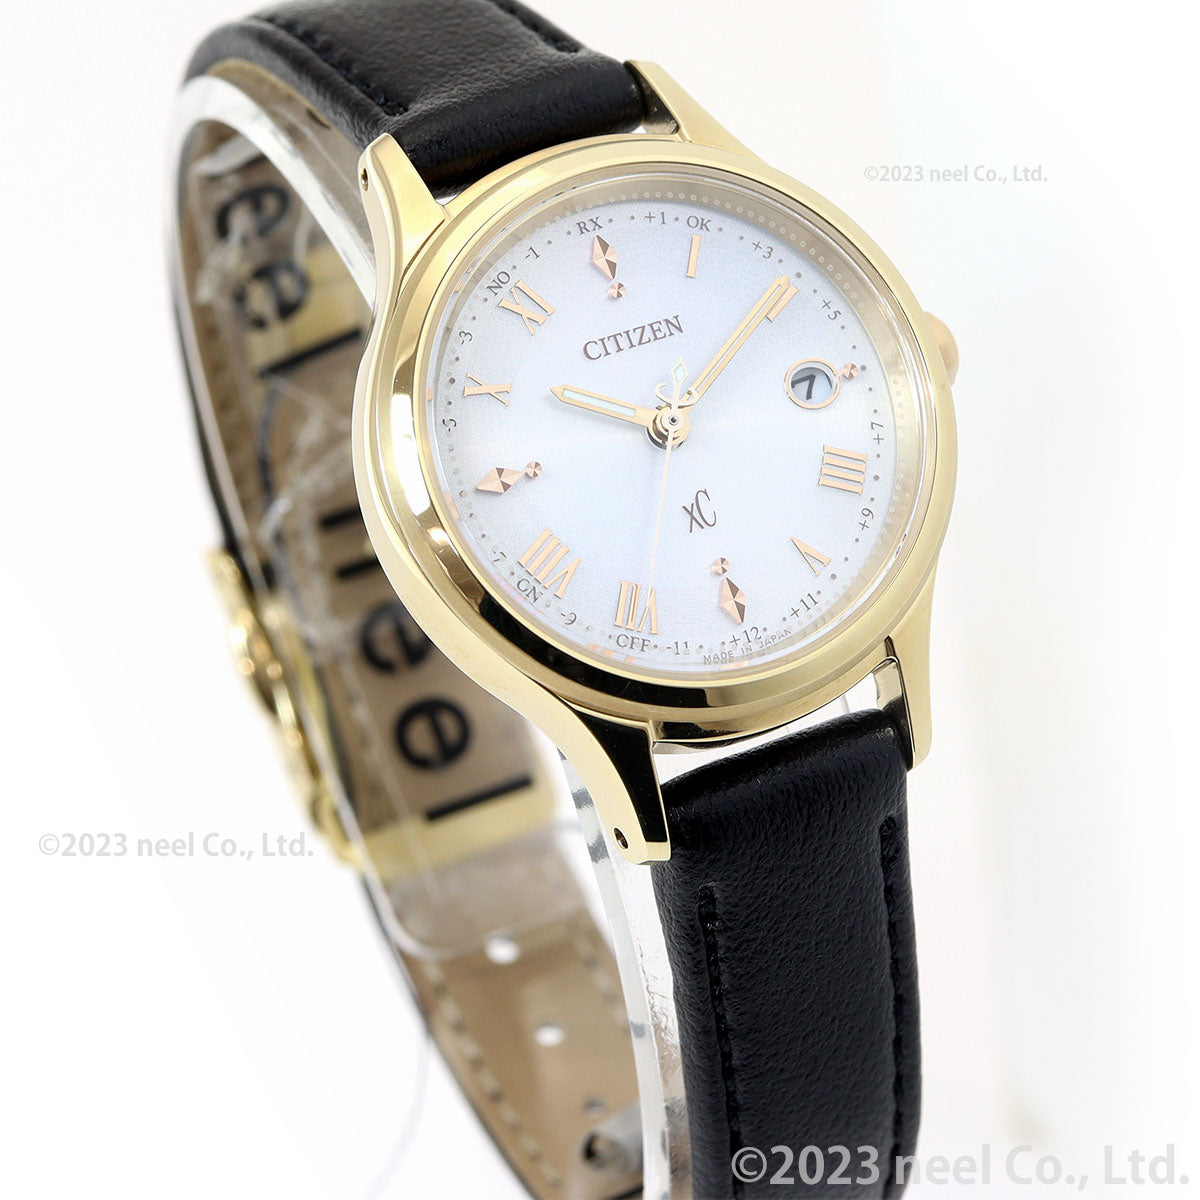 シチズン クロスシー エコドライブ 電波 xC ES9492-14A ティタニア ハッピーフライト レディース 腕時計 CITIZEN hikari collection